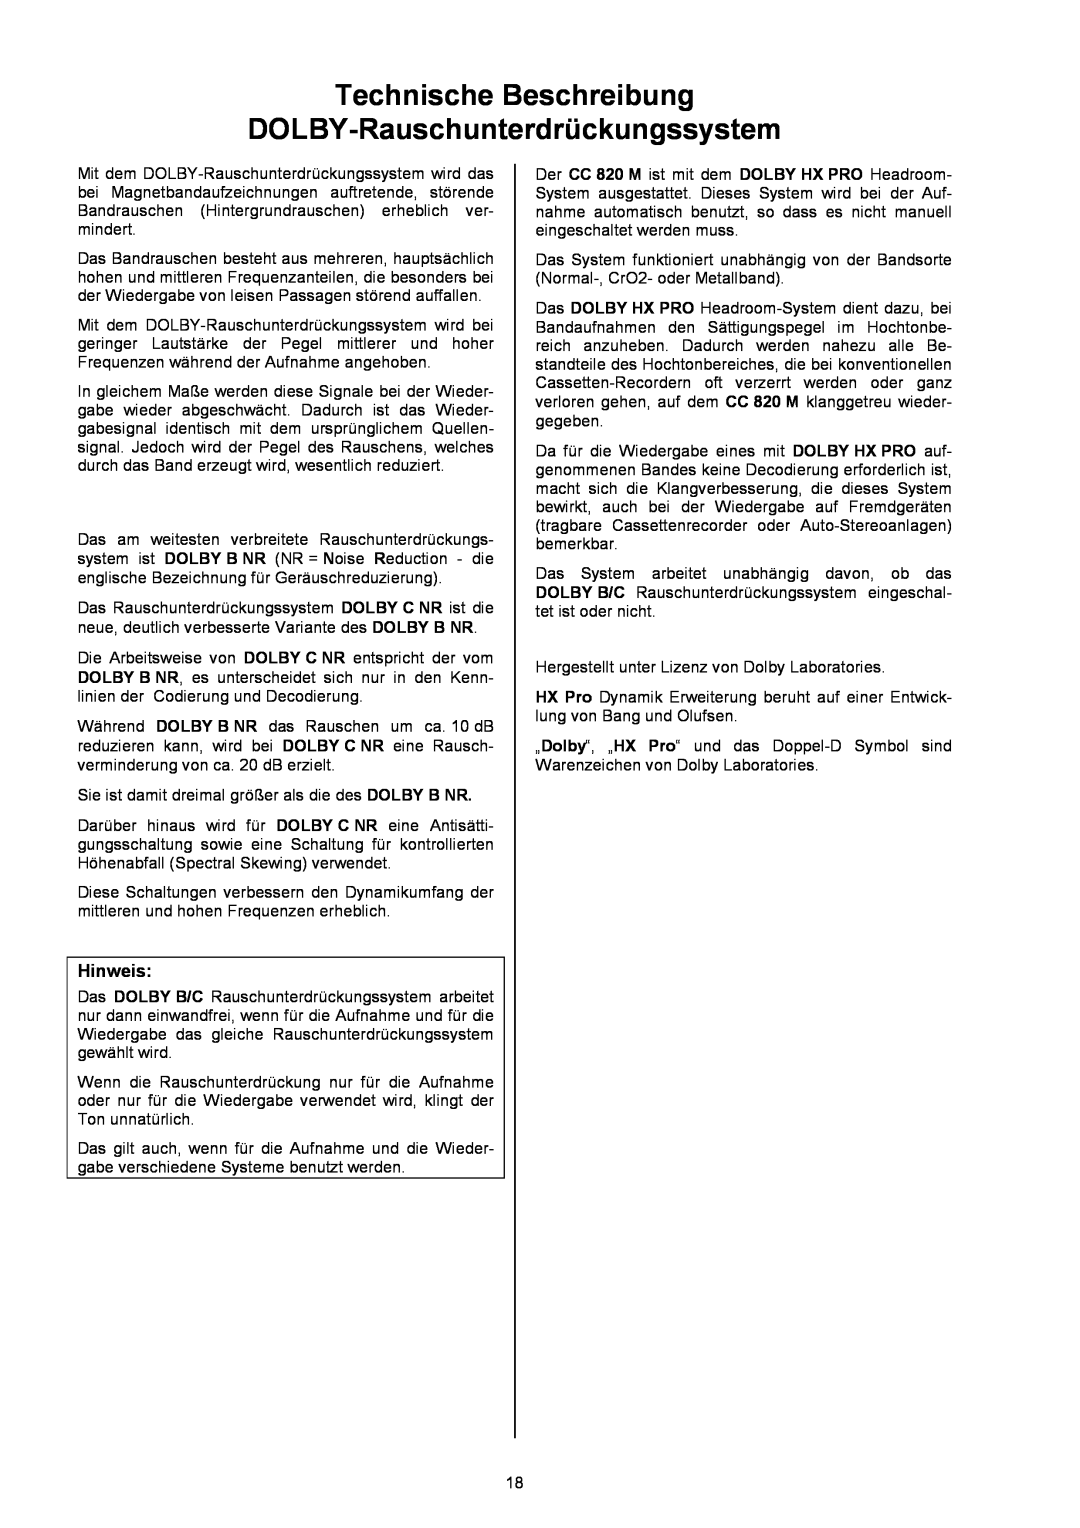 T+A Elektroakustik CC 820 M user manual Technische Beschreibung, DOLBY-Rauschunterdrückungssystem 